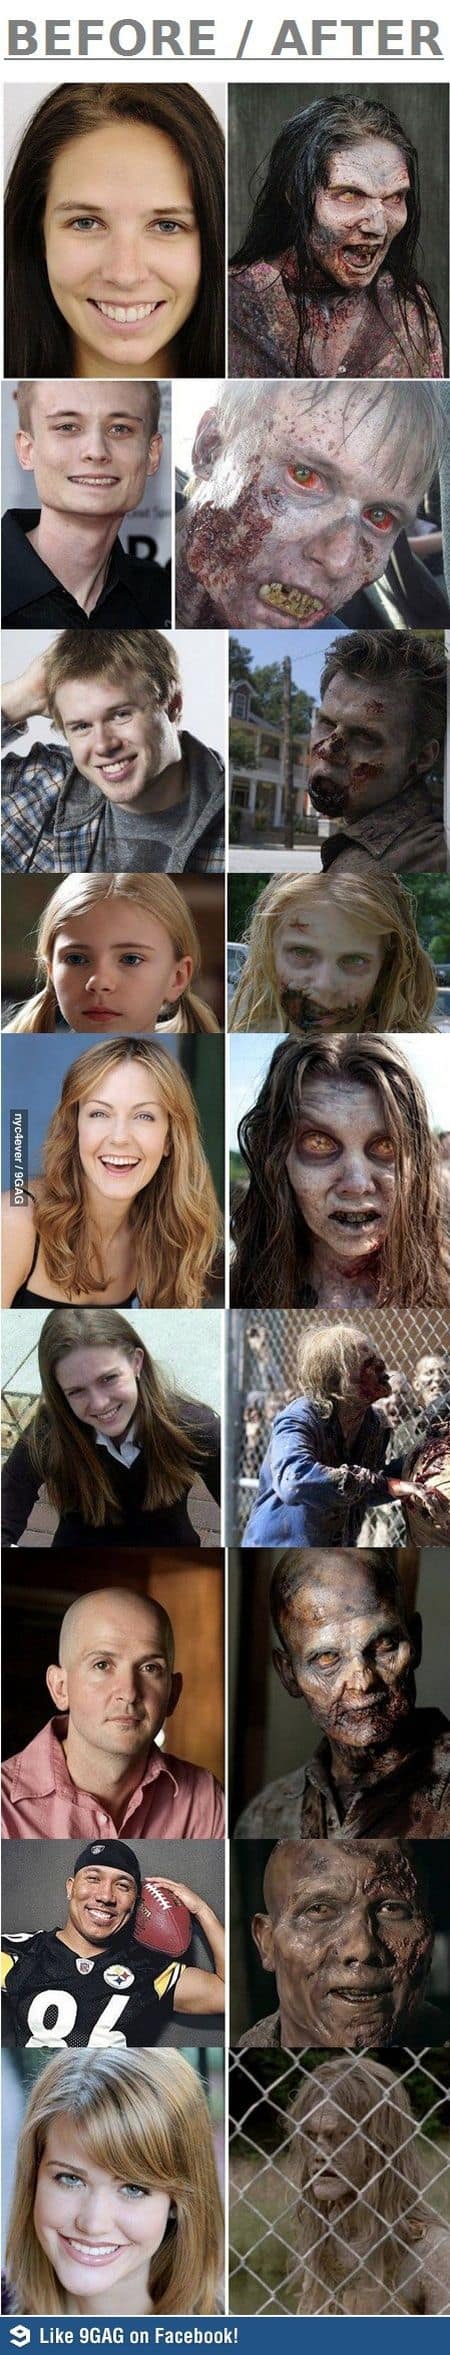 Actor zombi de "The Walking Dead"